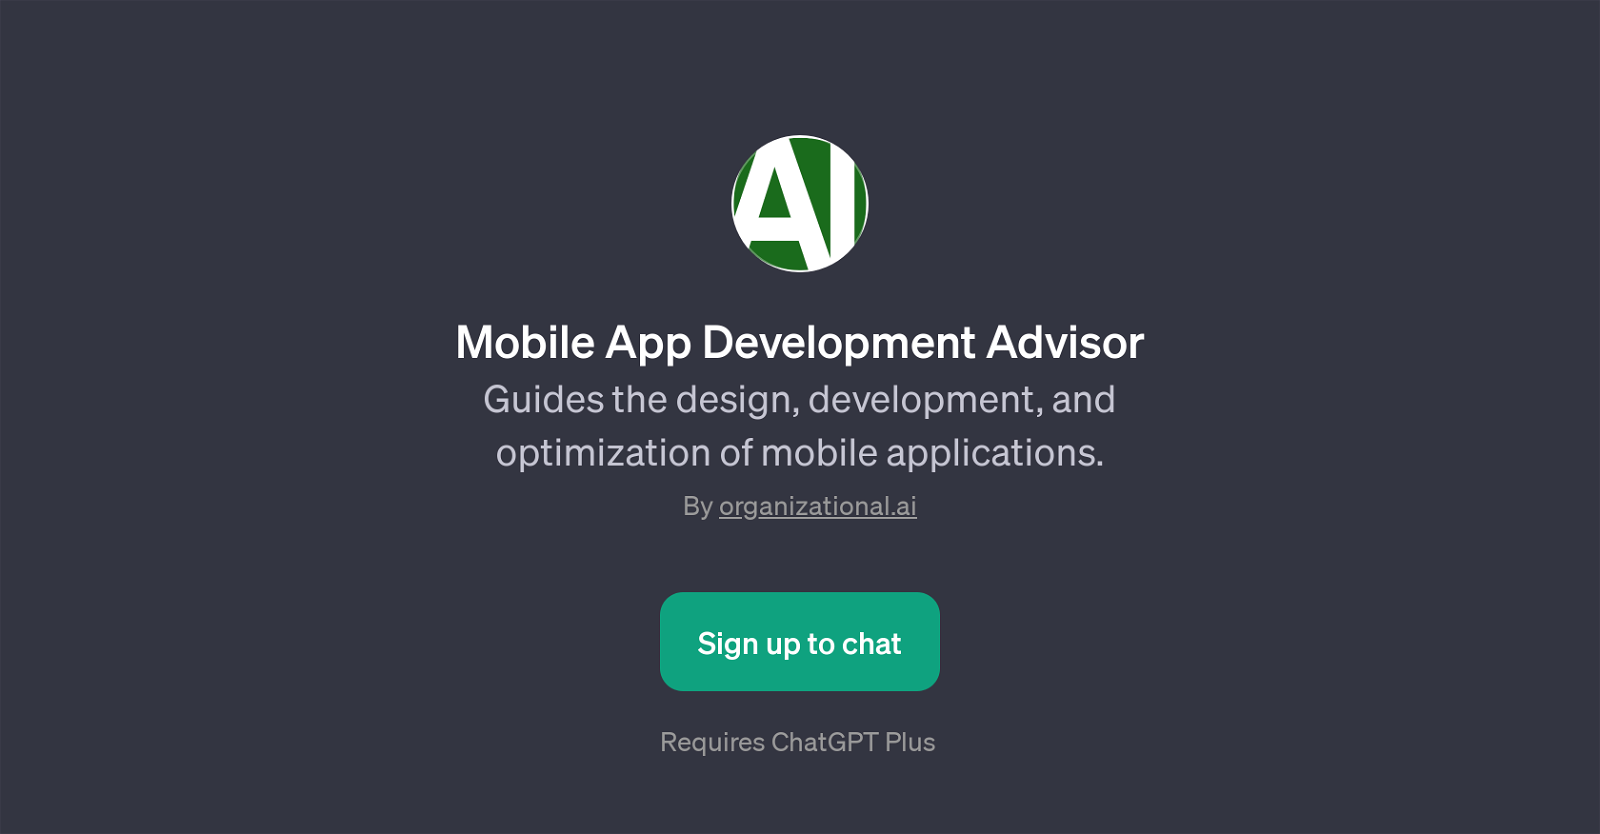 Mobile App Development Advisor website